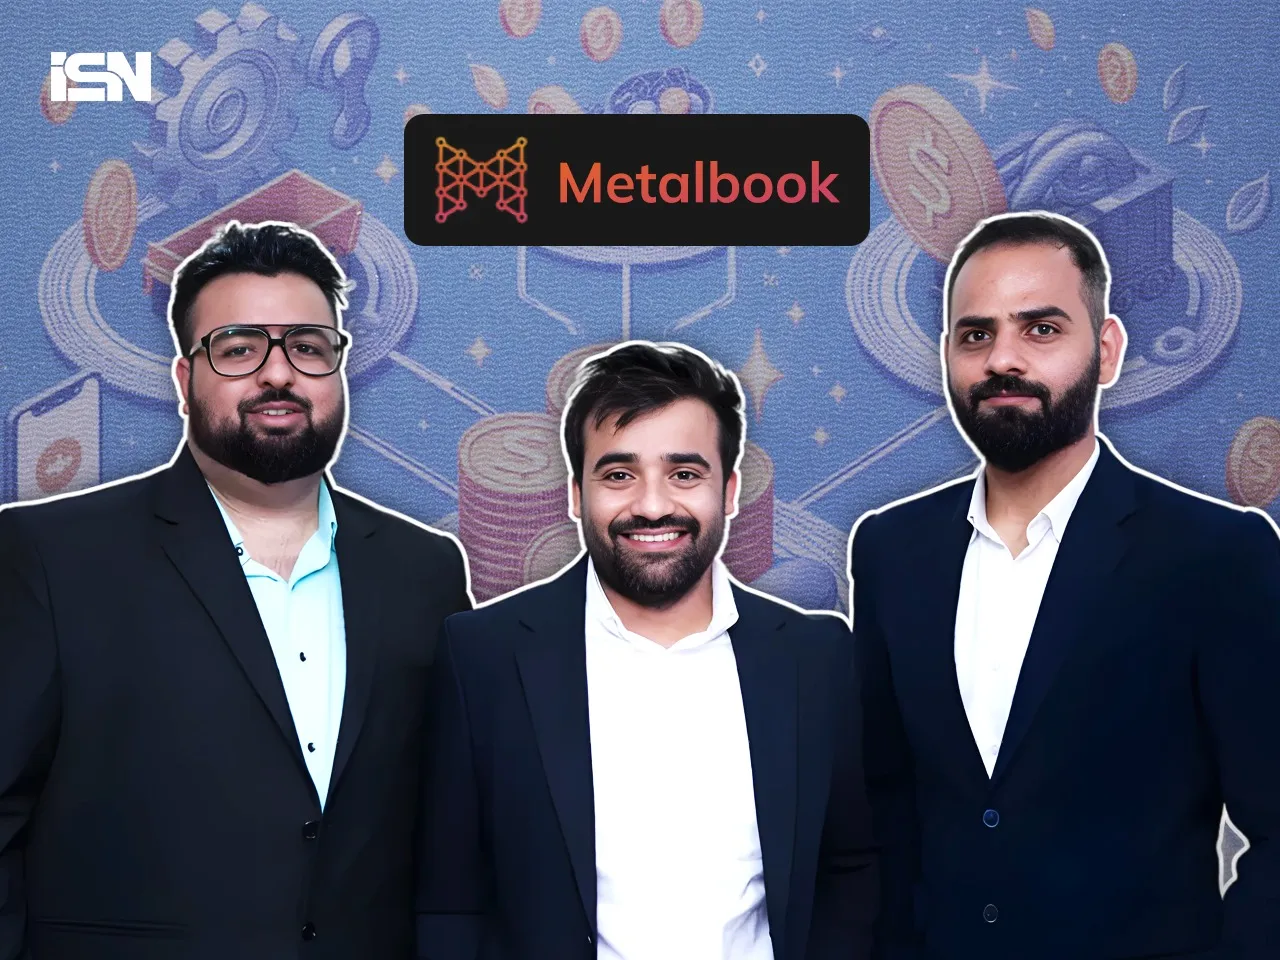 Digital supply chain platform Metalbook raises $15M in a Series A round